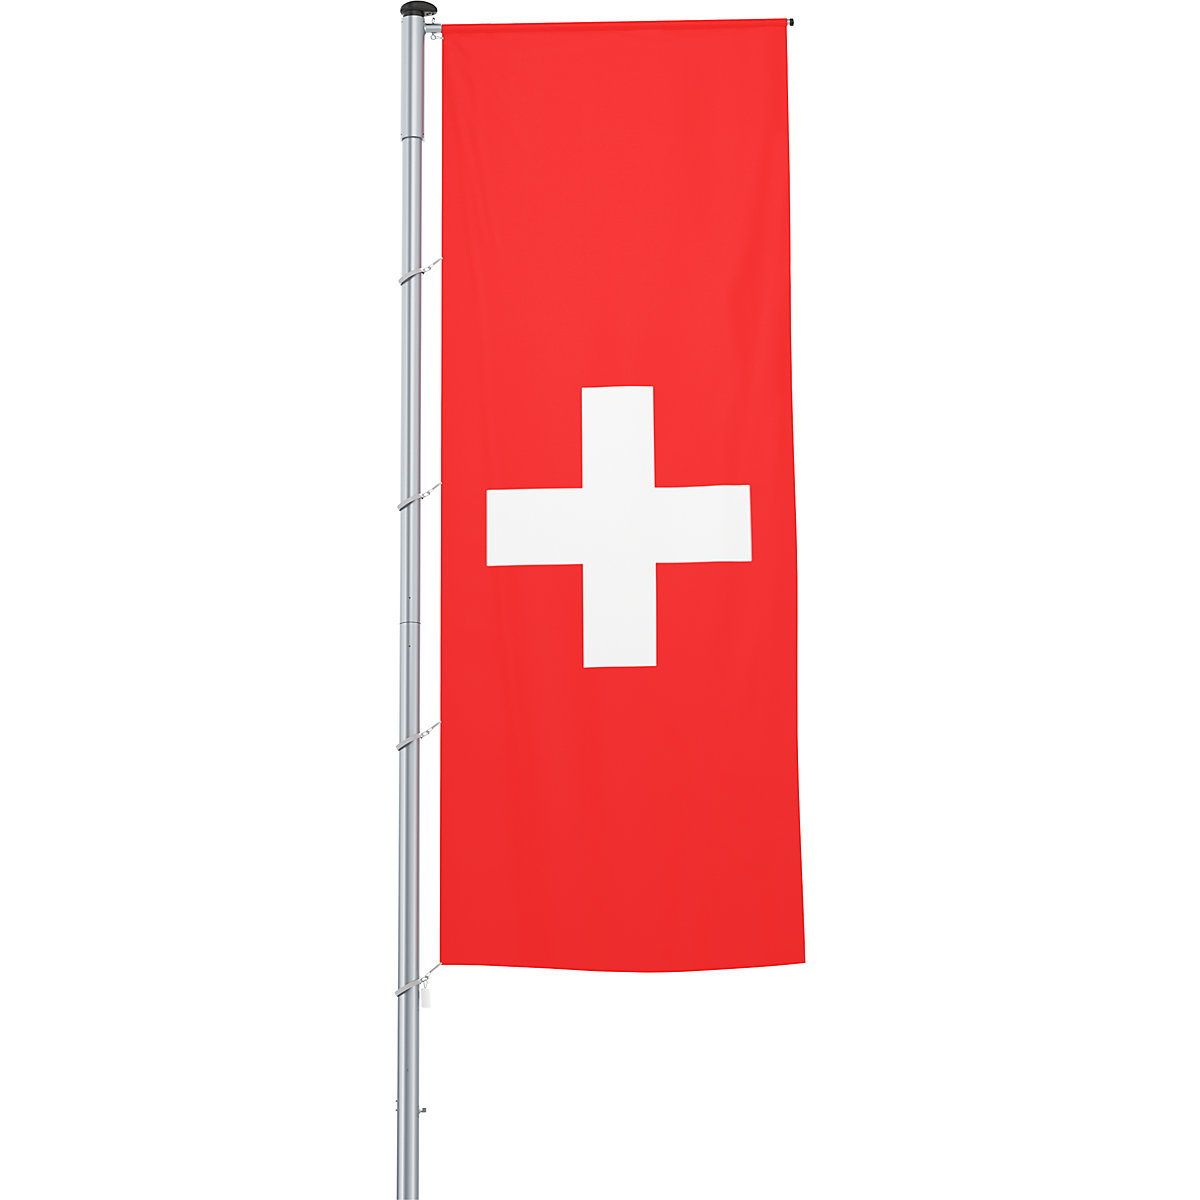 Mastvlag/landvlag – Mannus, formaat 1,2 x 3 m, Zwitserland-14